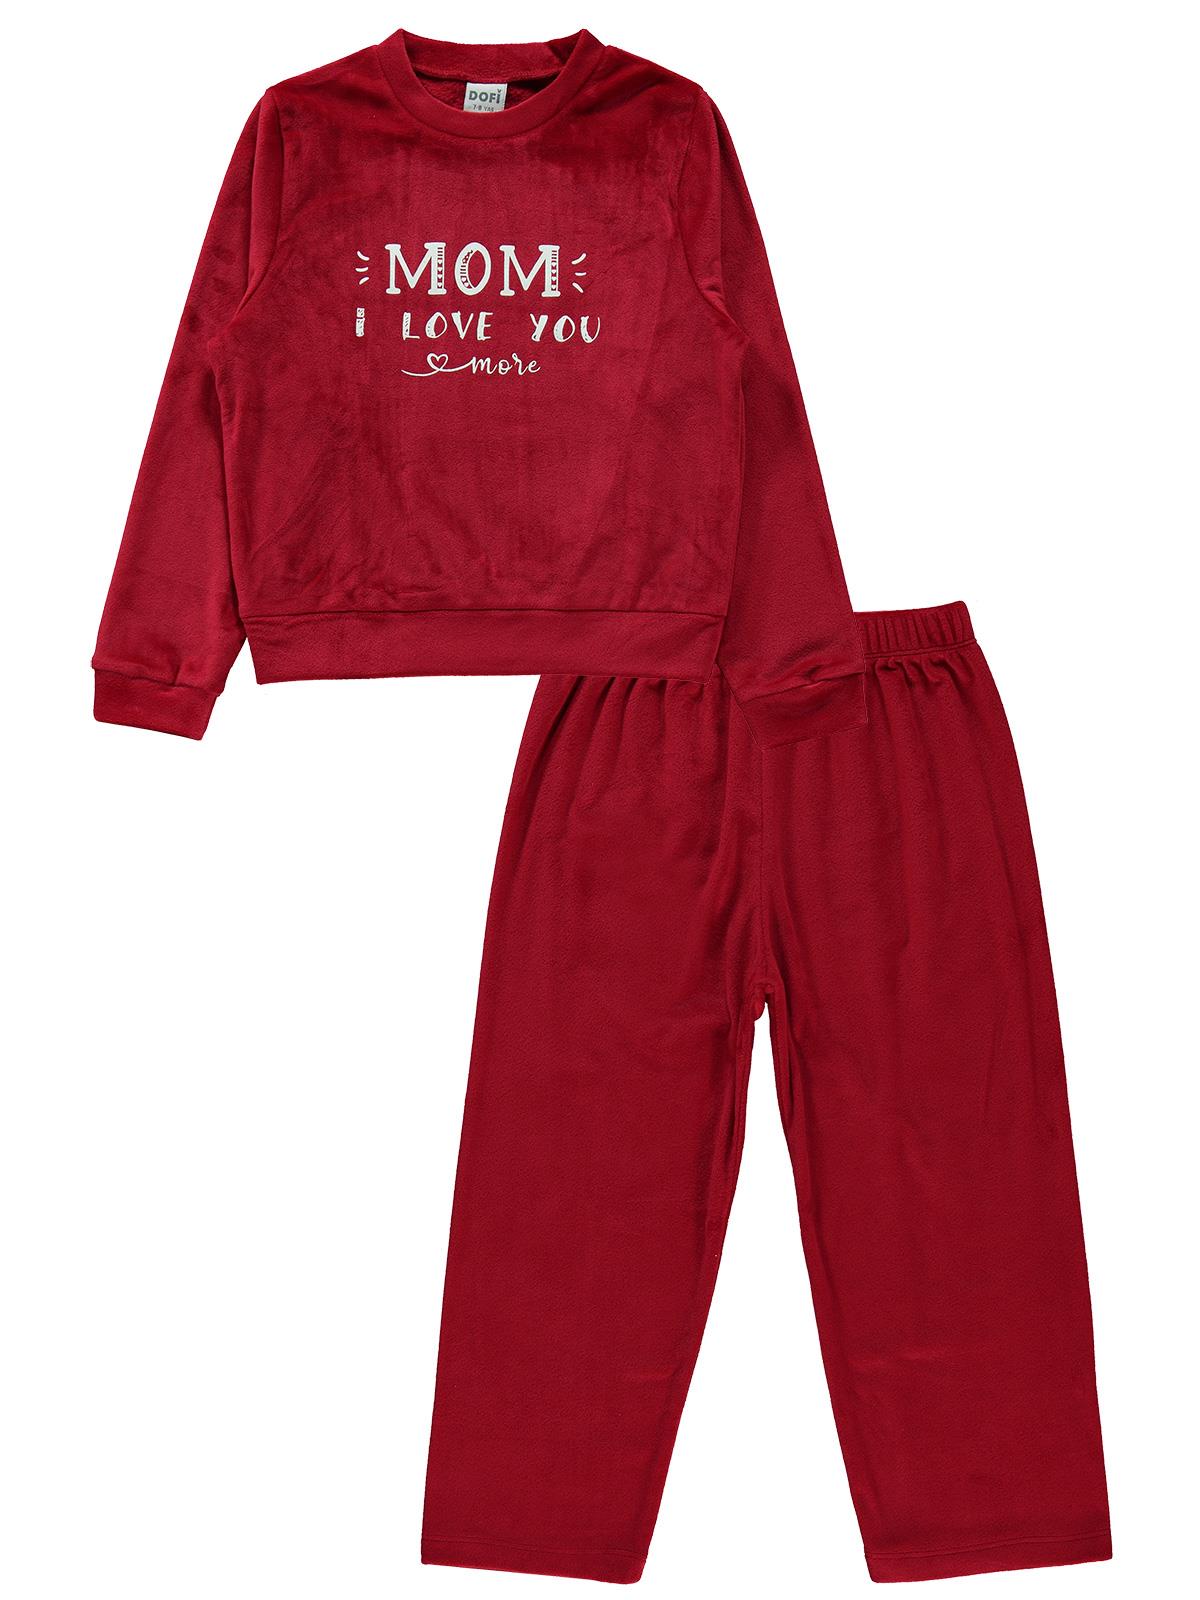 Dofi Kız Çocuk Pijama Takımı 7-11 Yaş Bordo